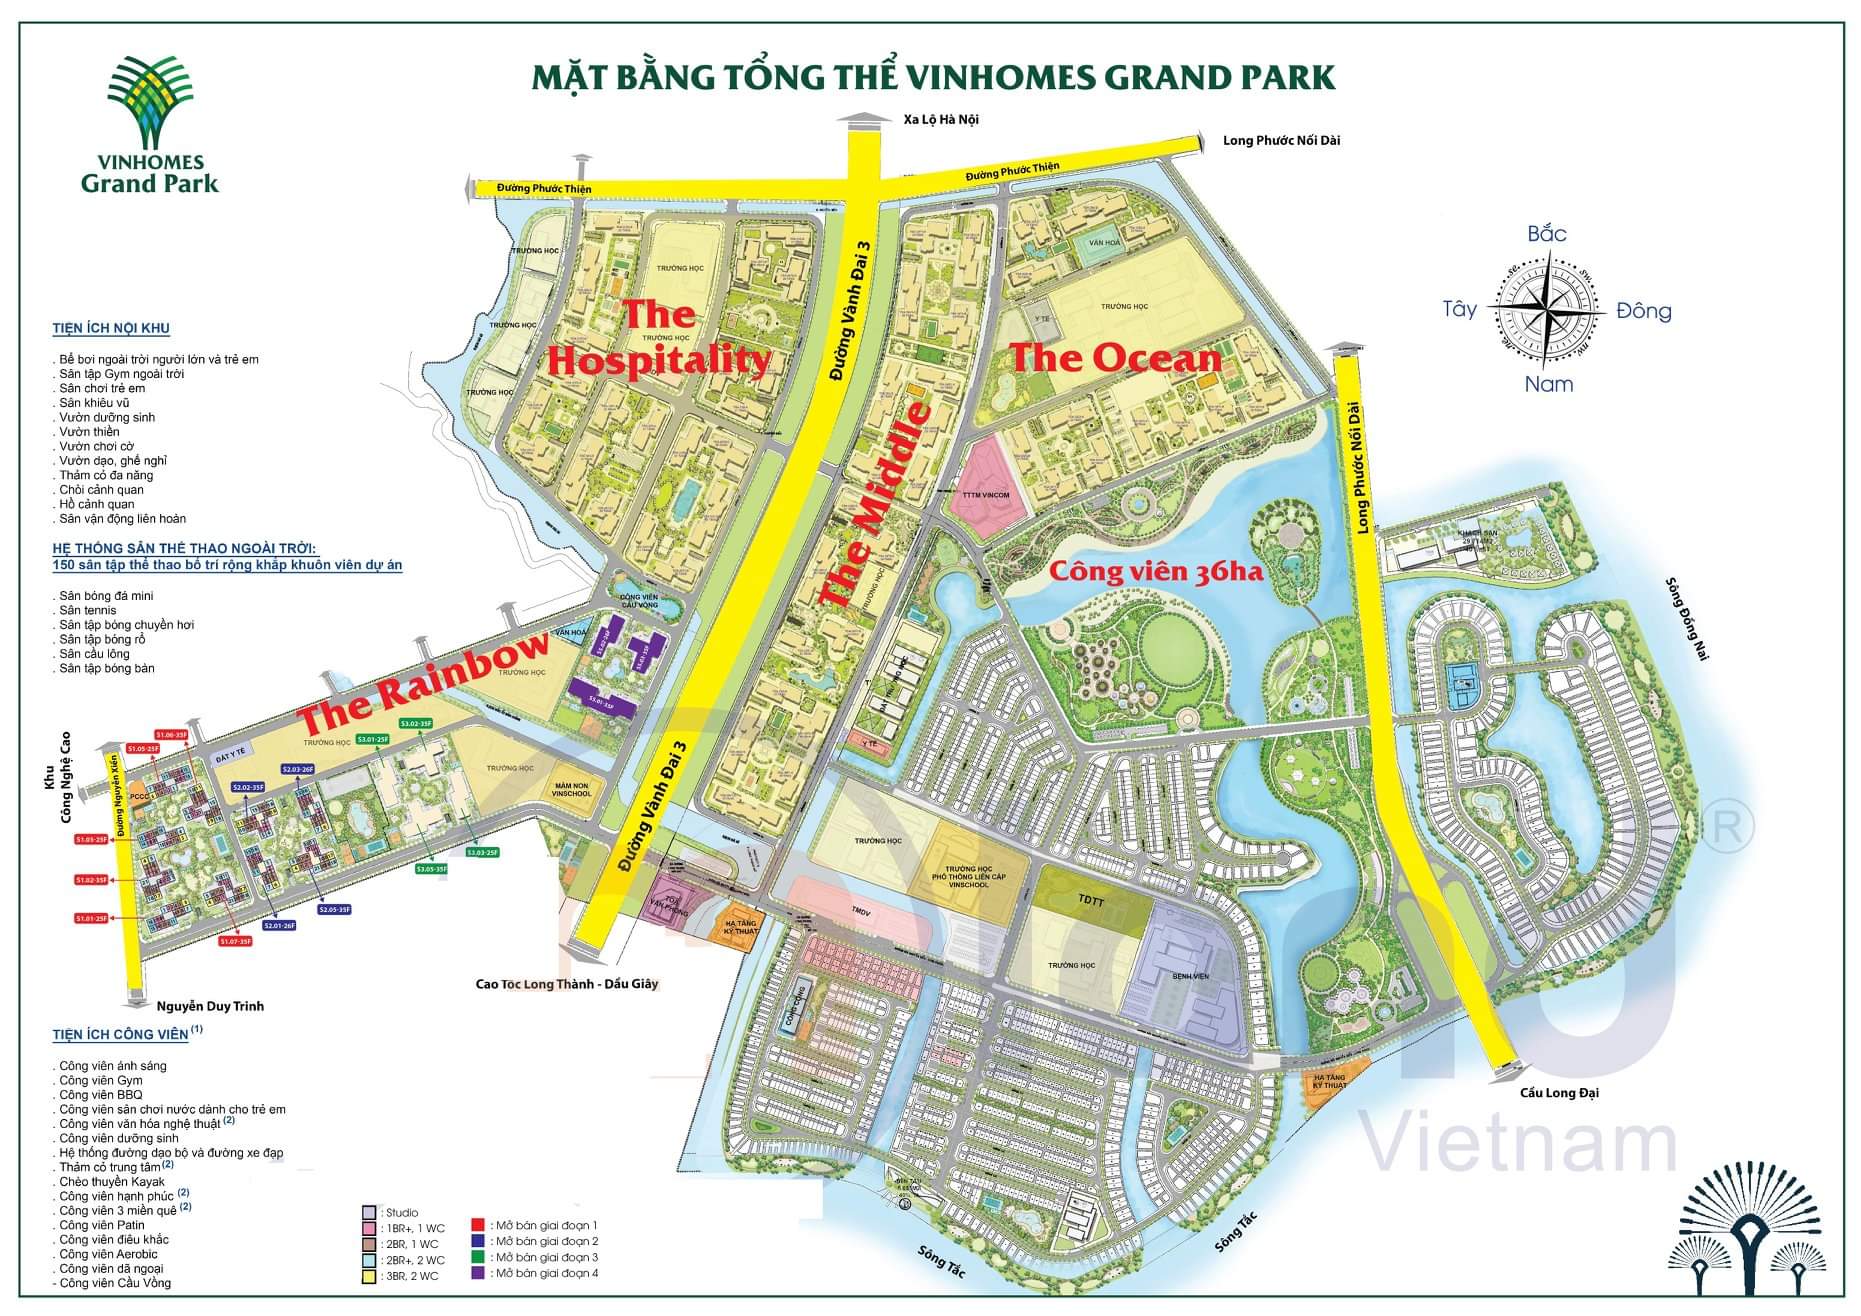 Vinhomes Grand Park vừa mới ra mắt đang tạo sức hút trên thị trường